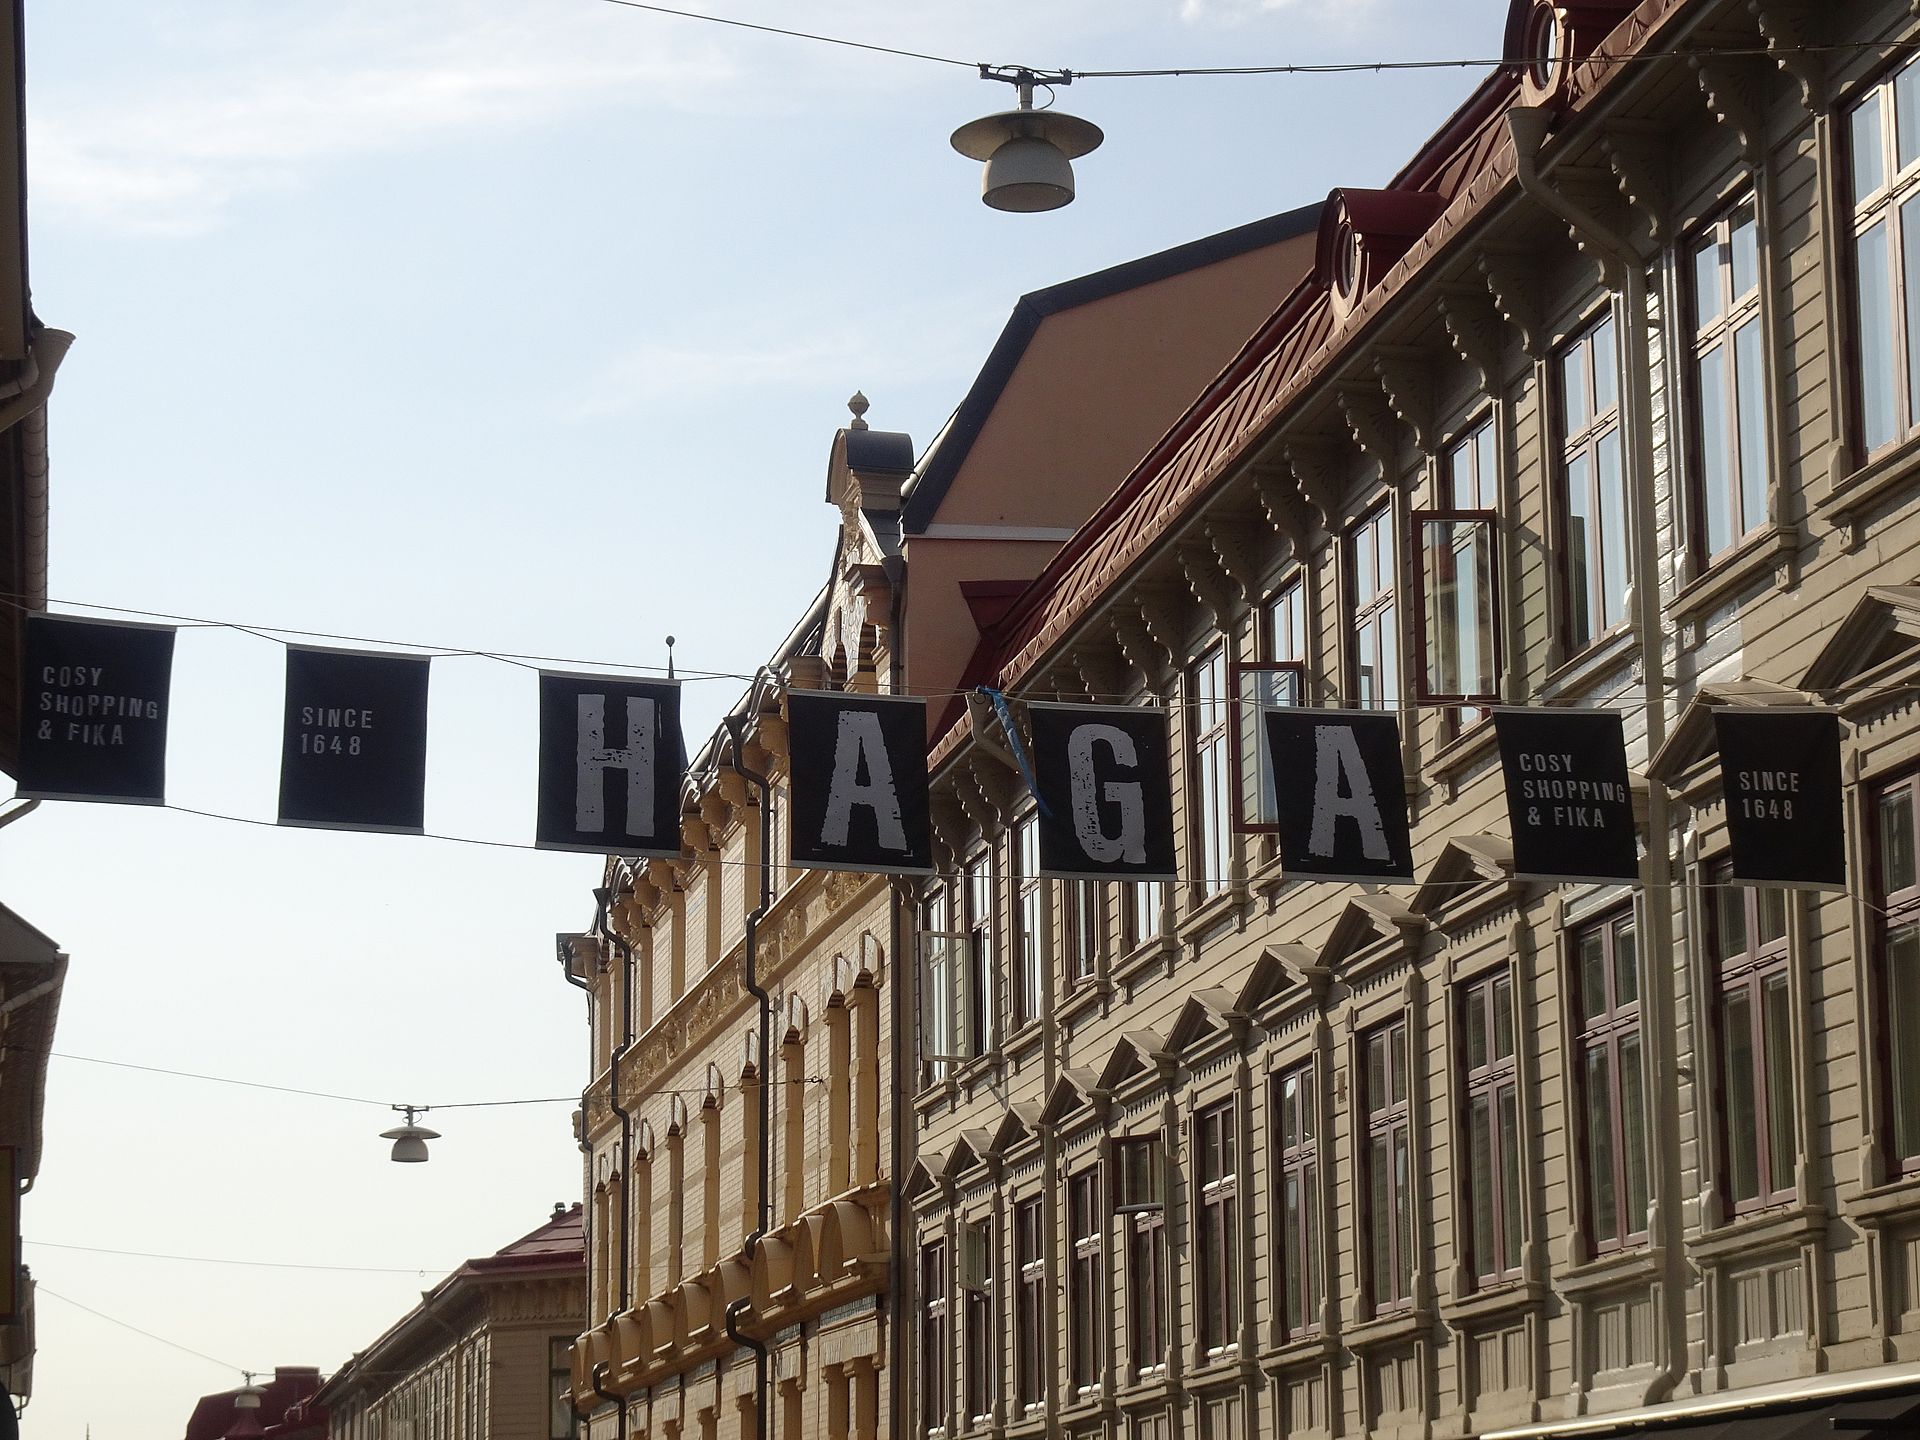 HAGA - Cosy Shopping and Fika!